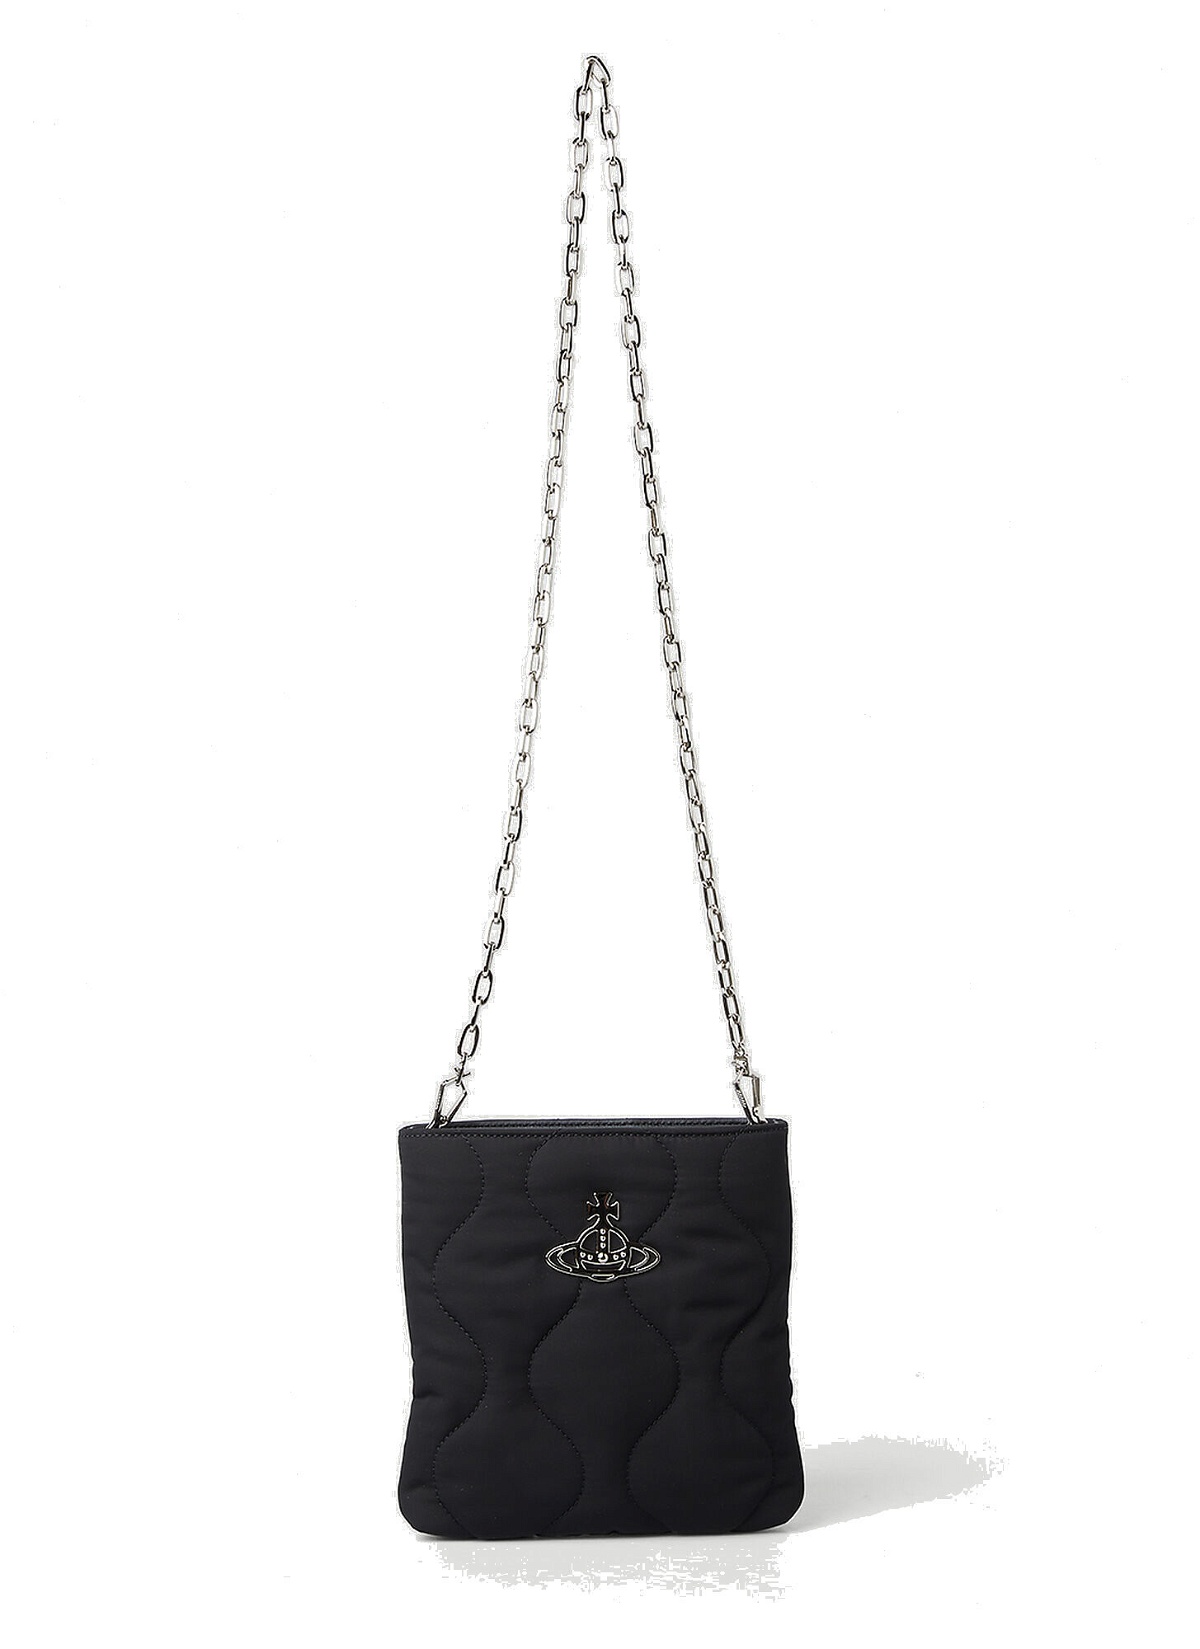 Camper Square Shoulder Bag in Black Vivienne Westwood